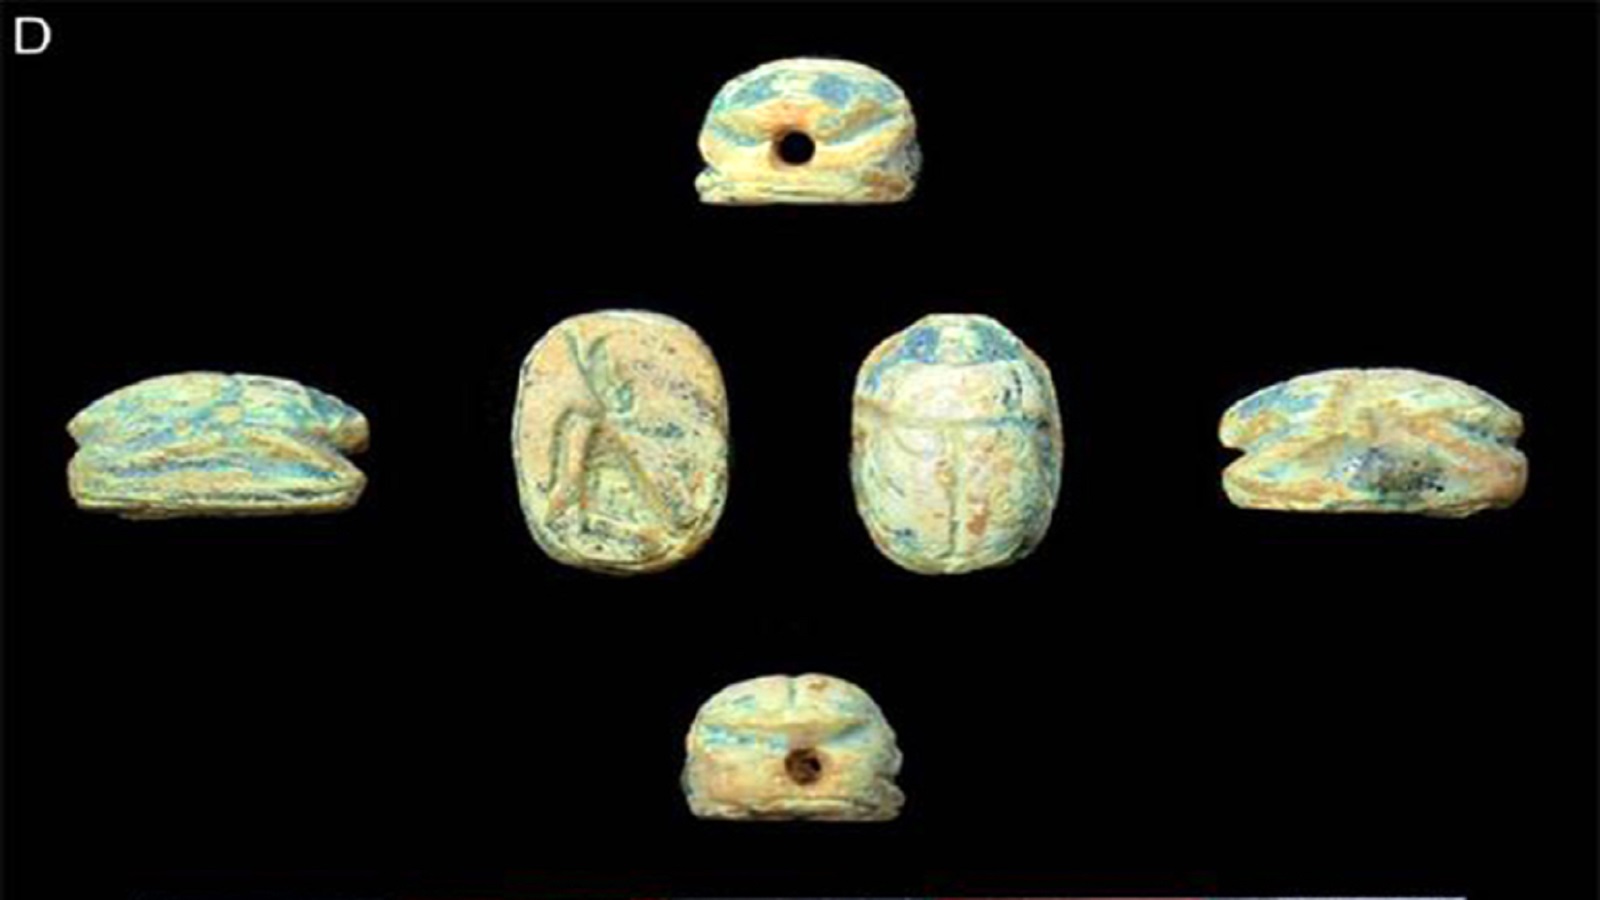   قطعة مصرية من مجموعة اللقي التي تعود إلى هذا الموقع.